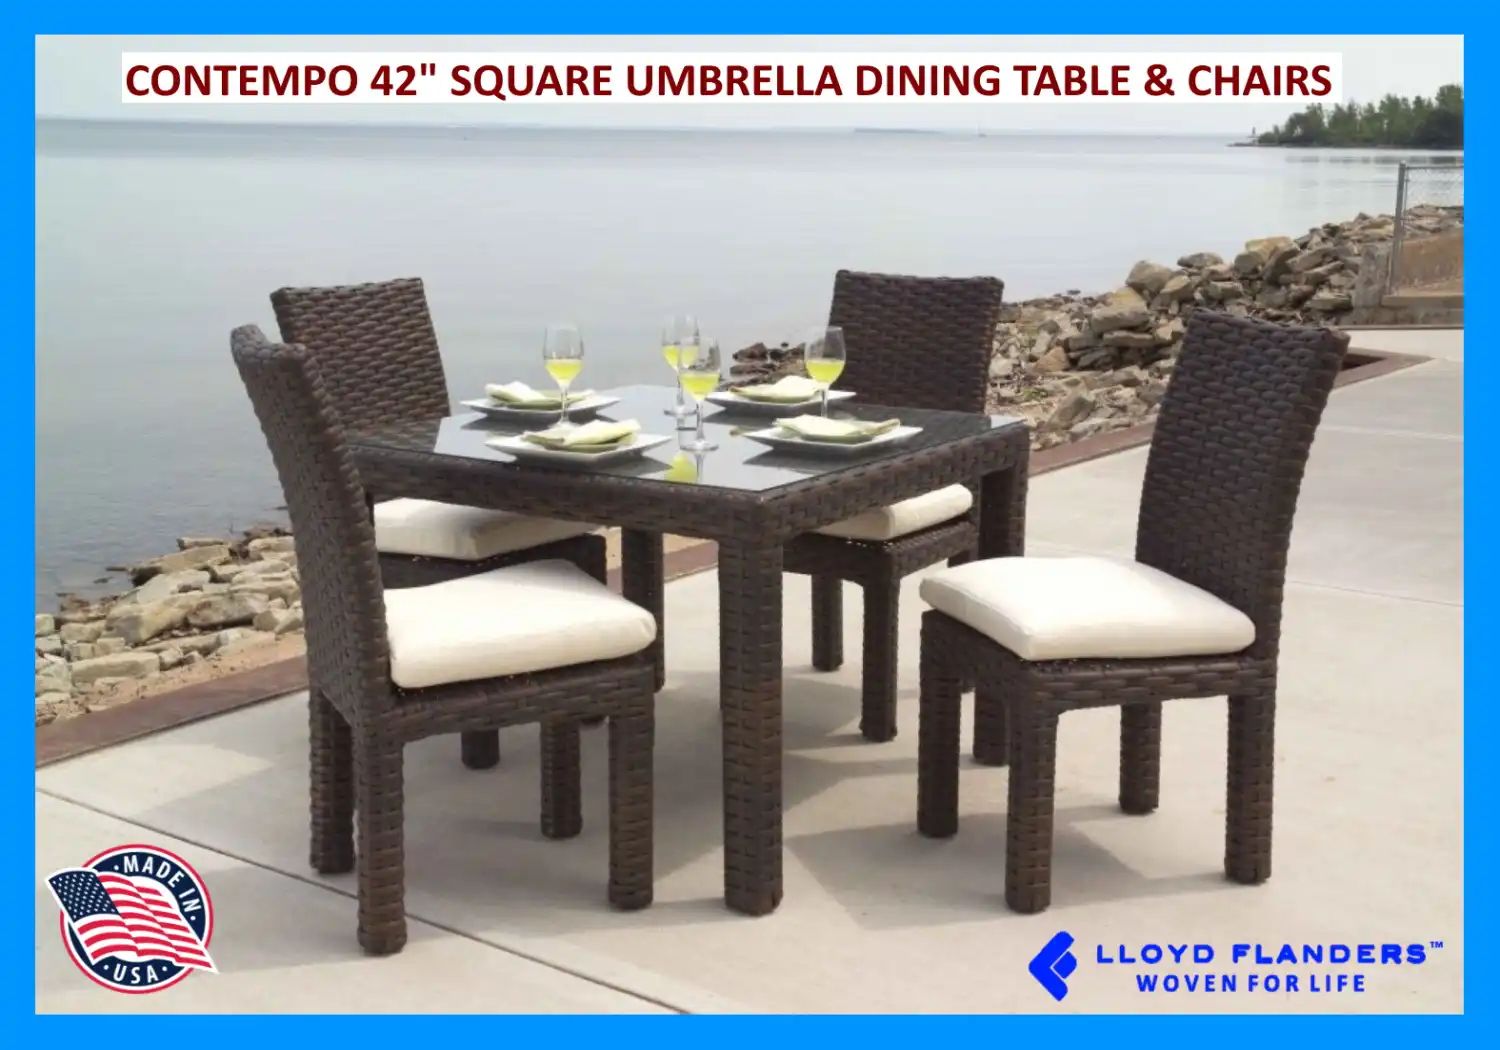 CONTEMPO 42" SQUARE UMBRELLA DINING TABLE & CHAIRS